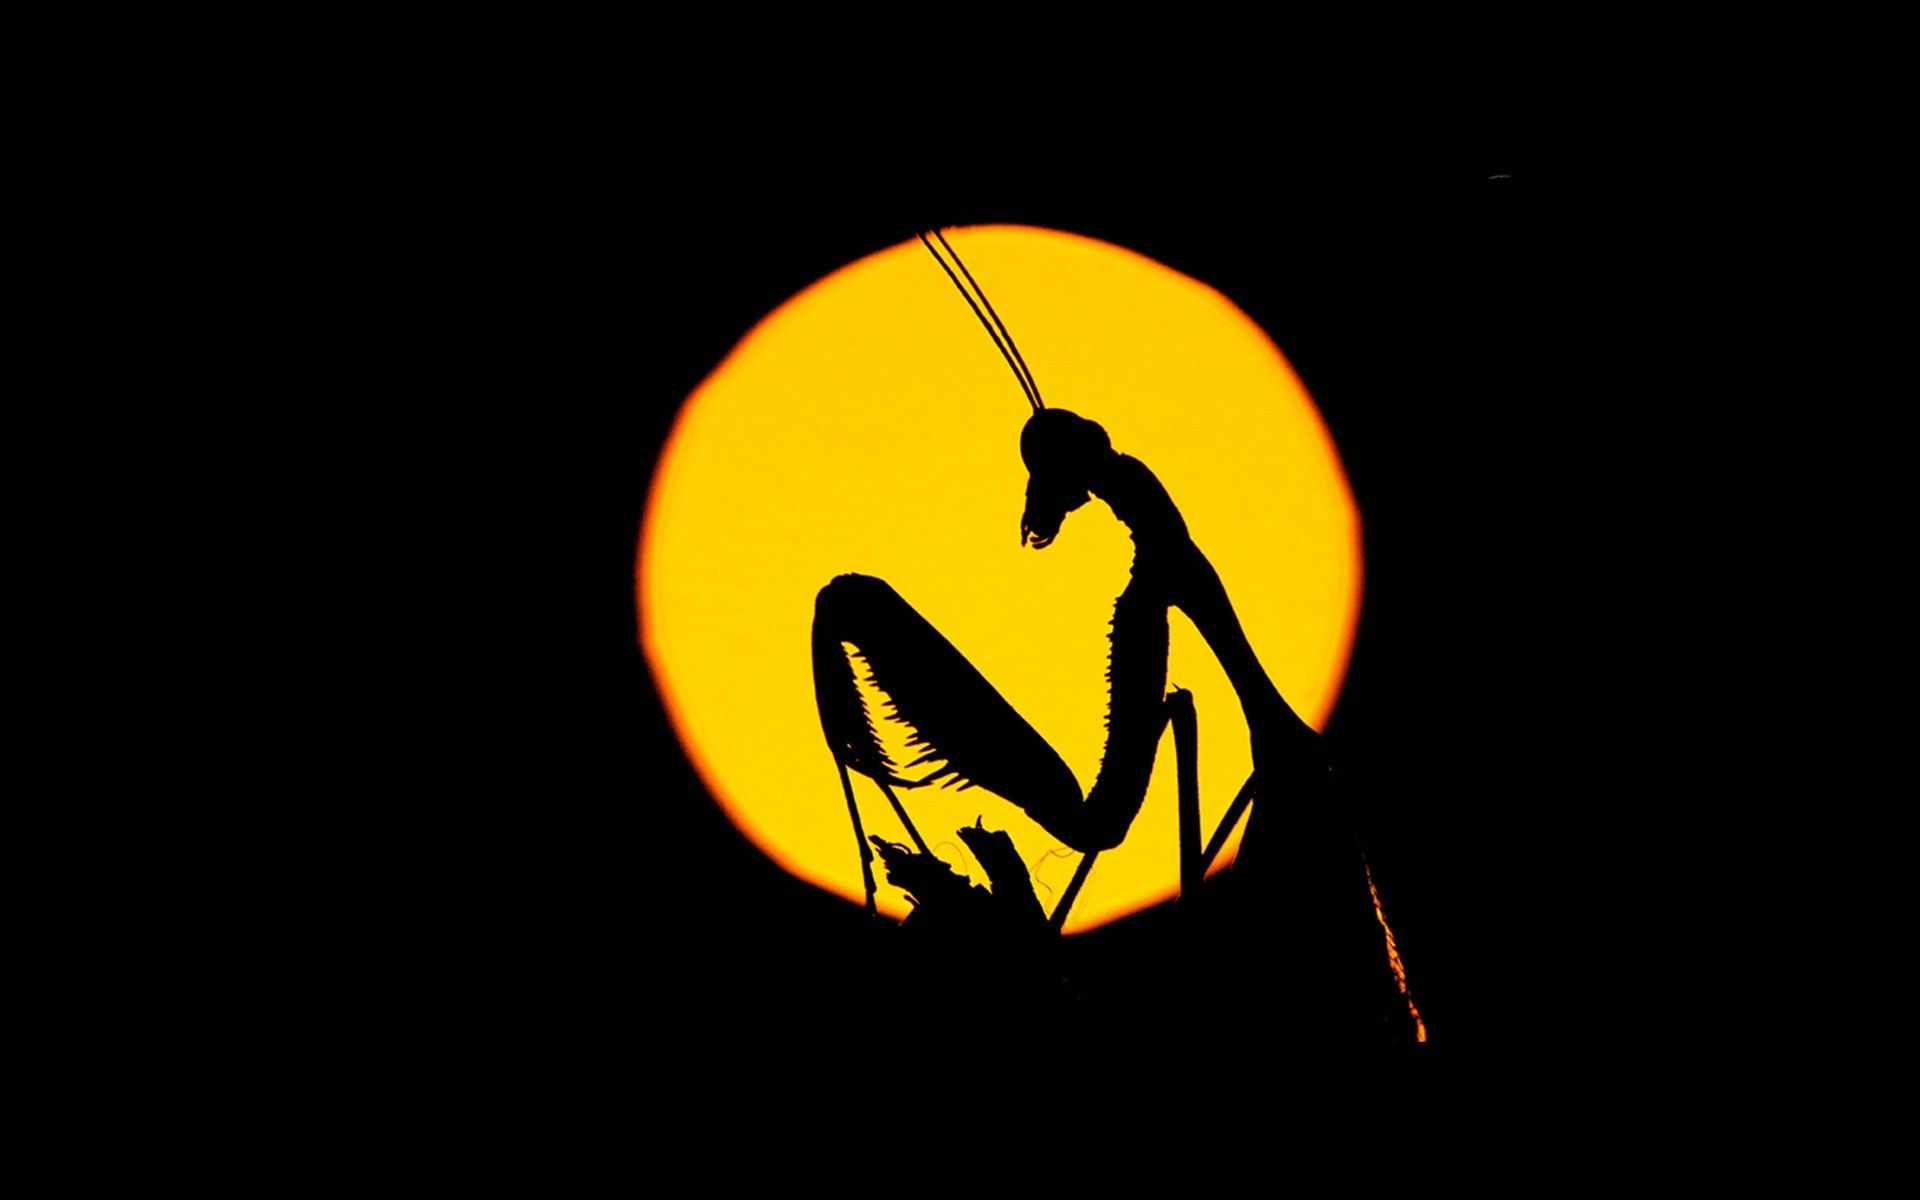 عکس هنری از حشره Mantis با تم زرد مشکی جالب توجه 